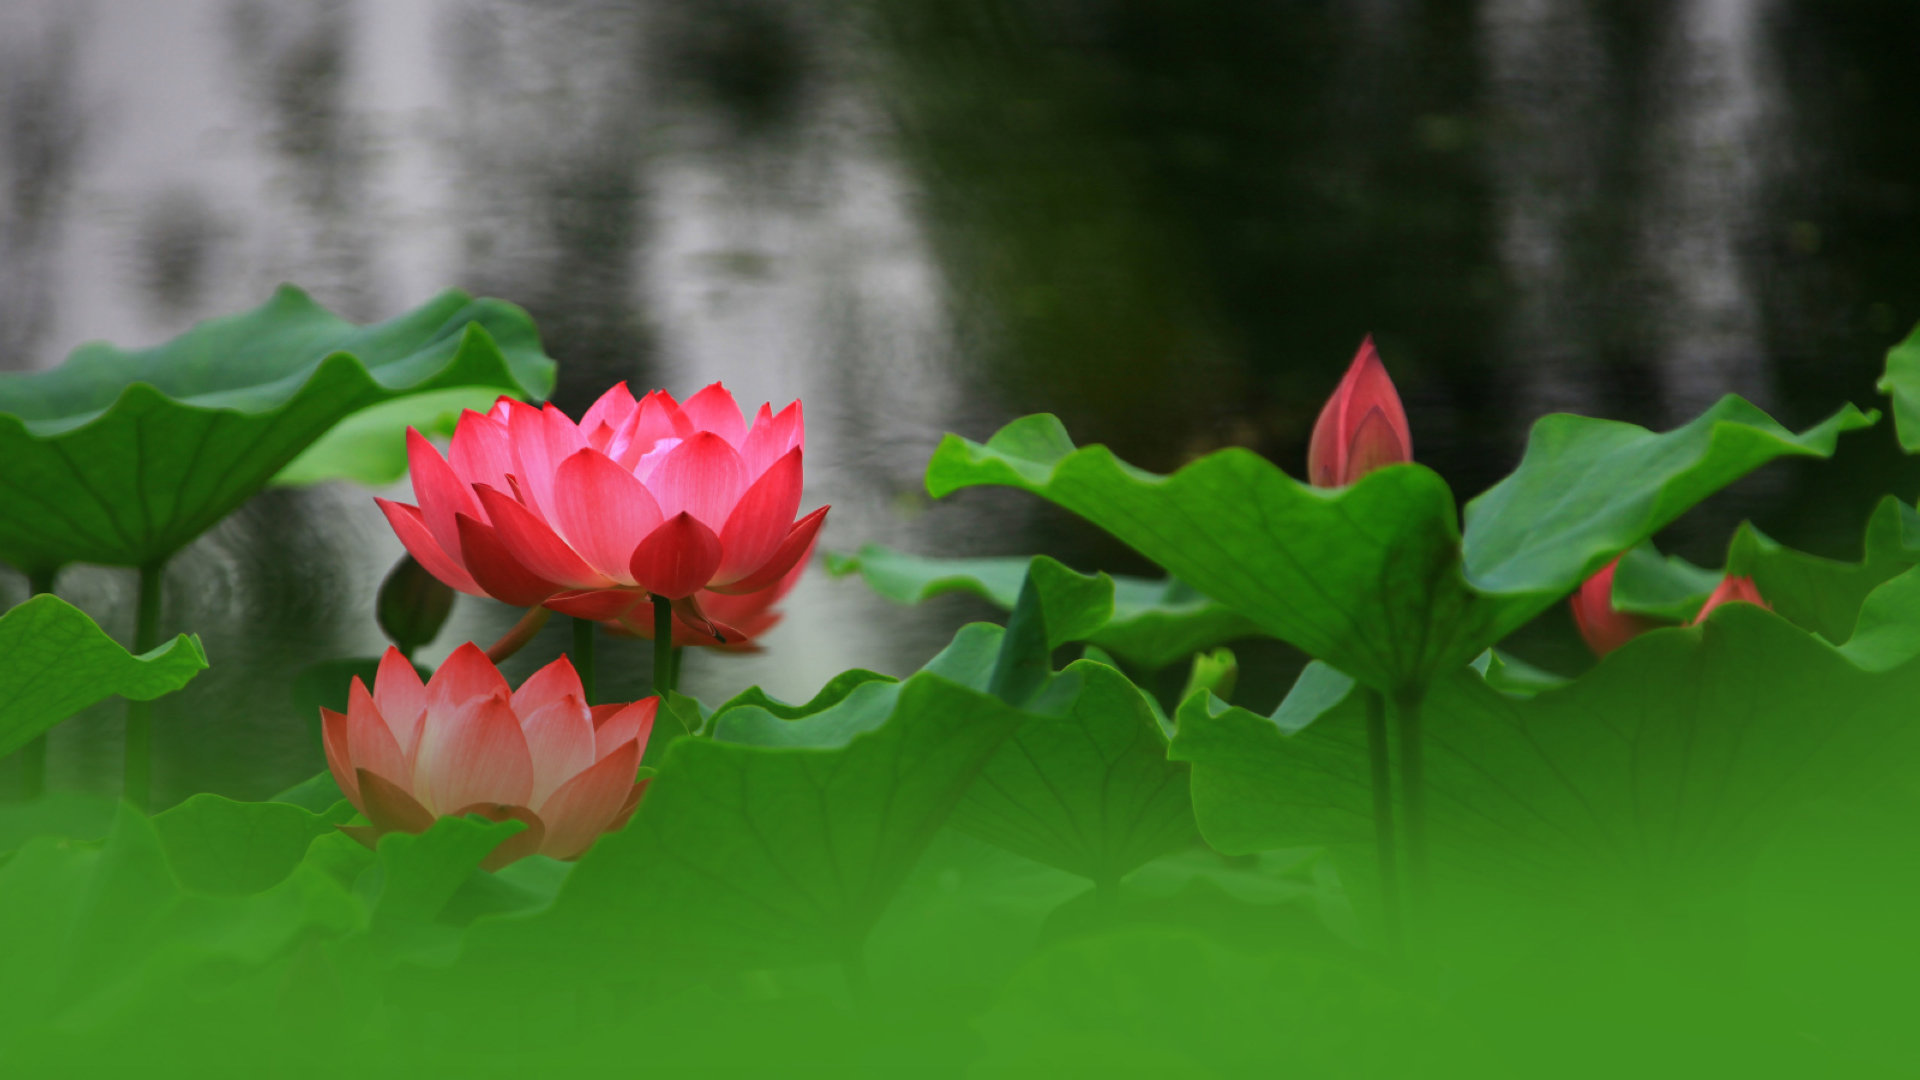 翠绿荷叶妩媚荷花或盛开或花苞娇艳欲滴高清摄影